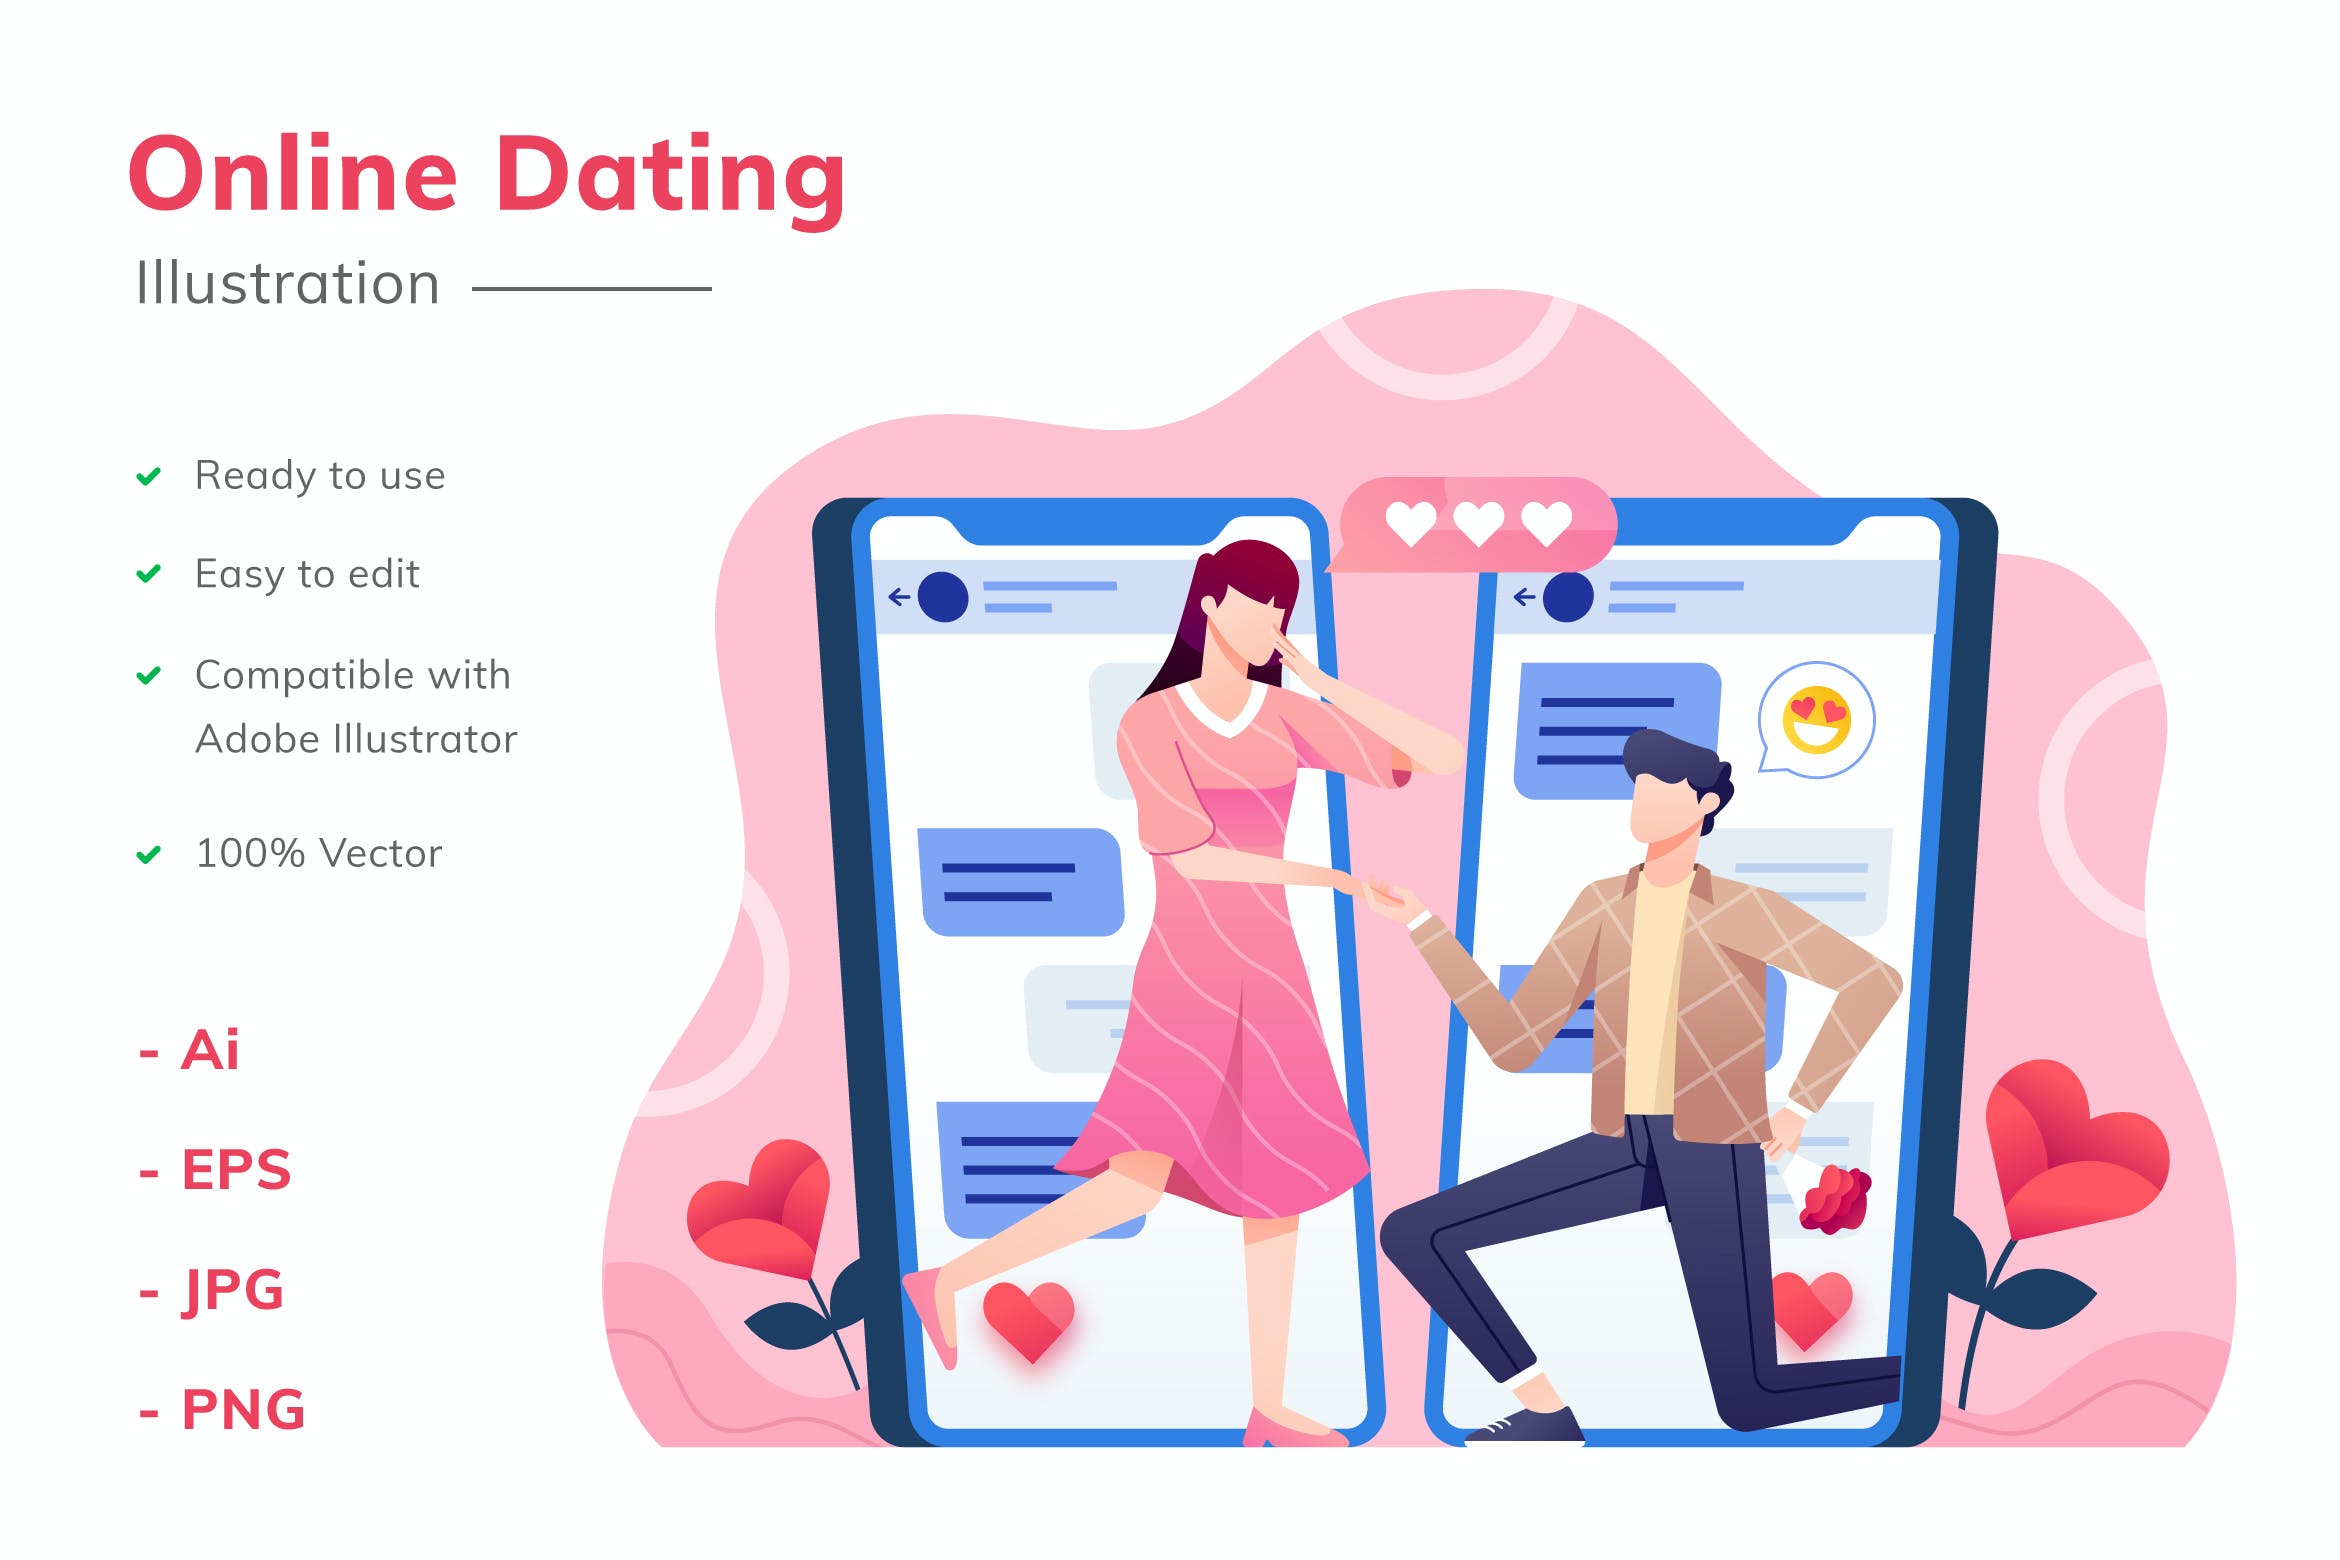 矢量插画网上约会主题设计素材 Online Dating Illustration设计素材模板